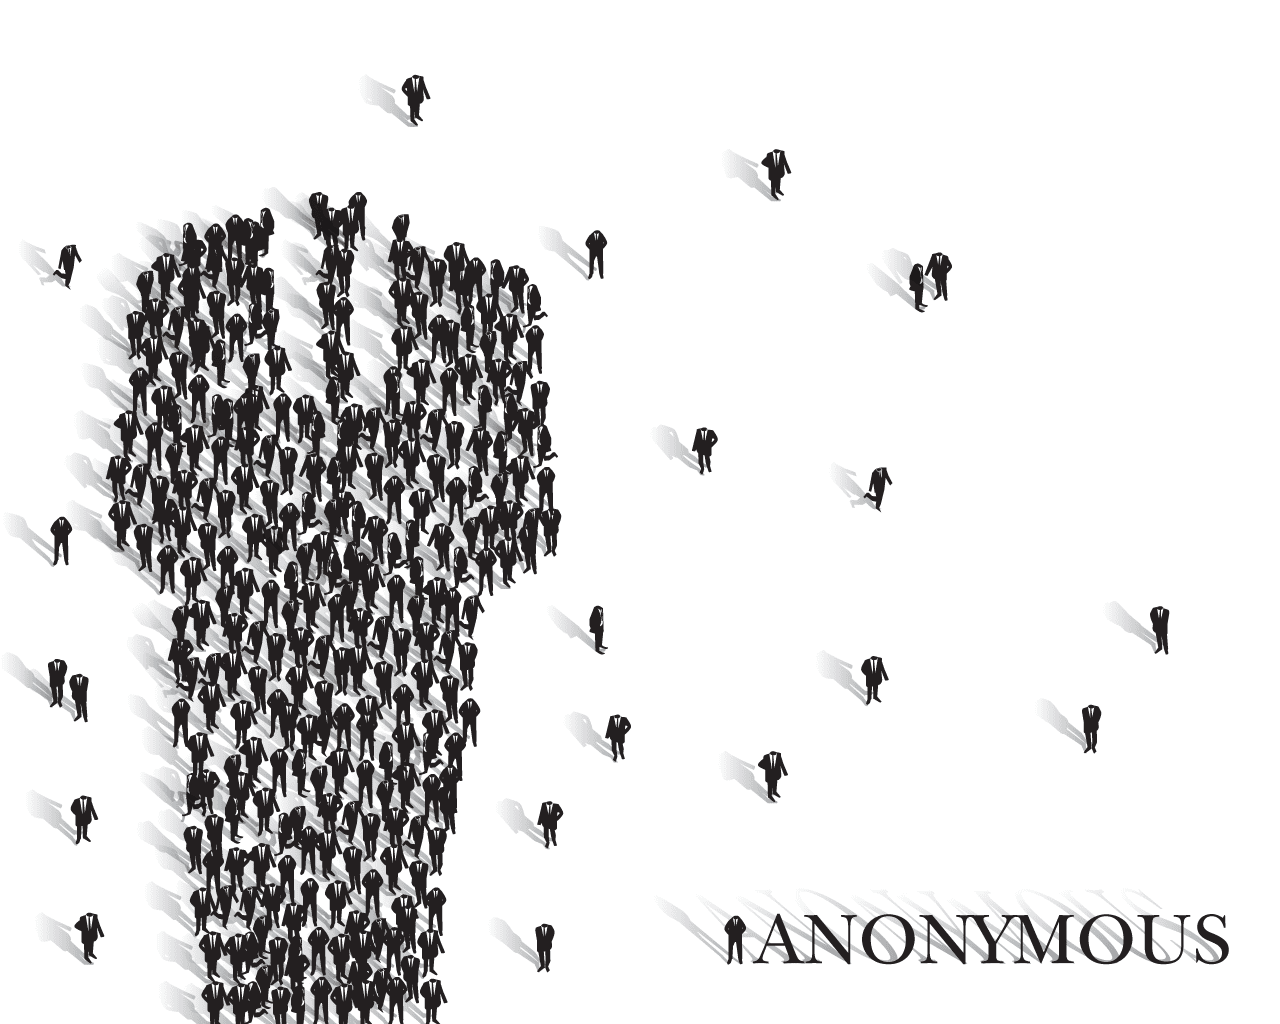 Grupo Anonymous Roba Miles de Contraseñas en Paypal